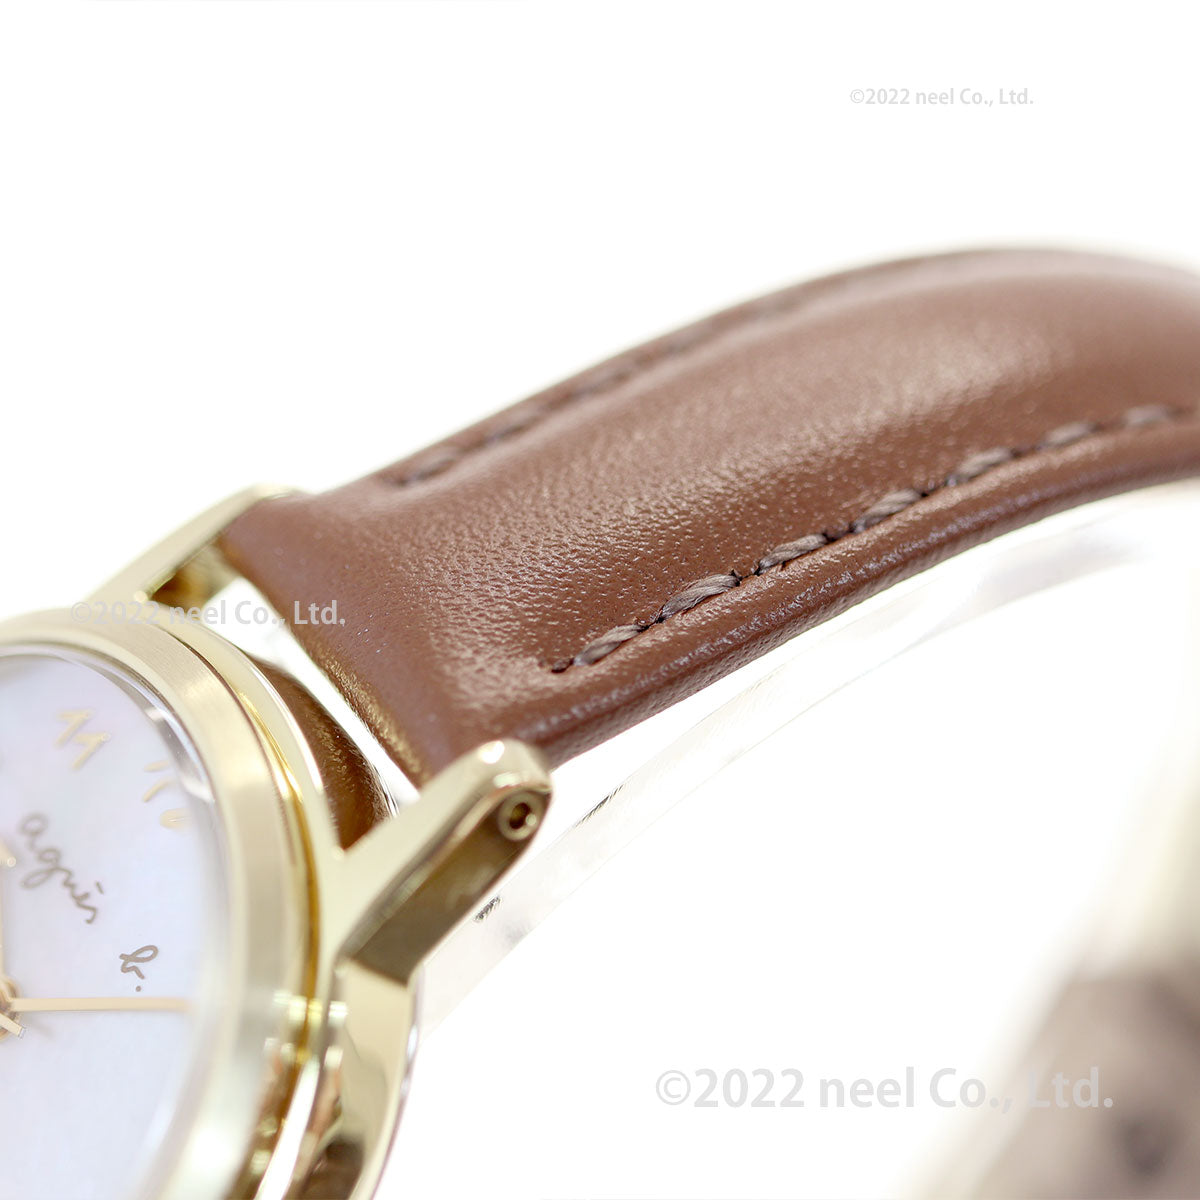 アニエスベー 時計 レディース ソーラー 腕時計 agnes b. マルチェロ Marcello FCSD991